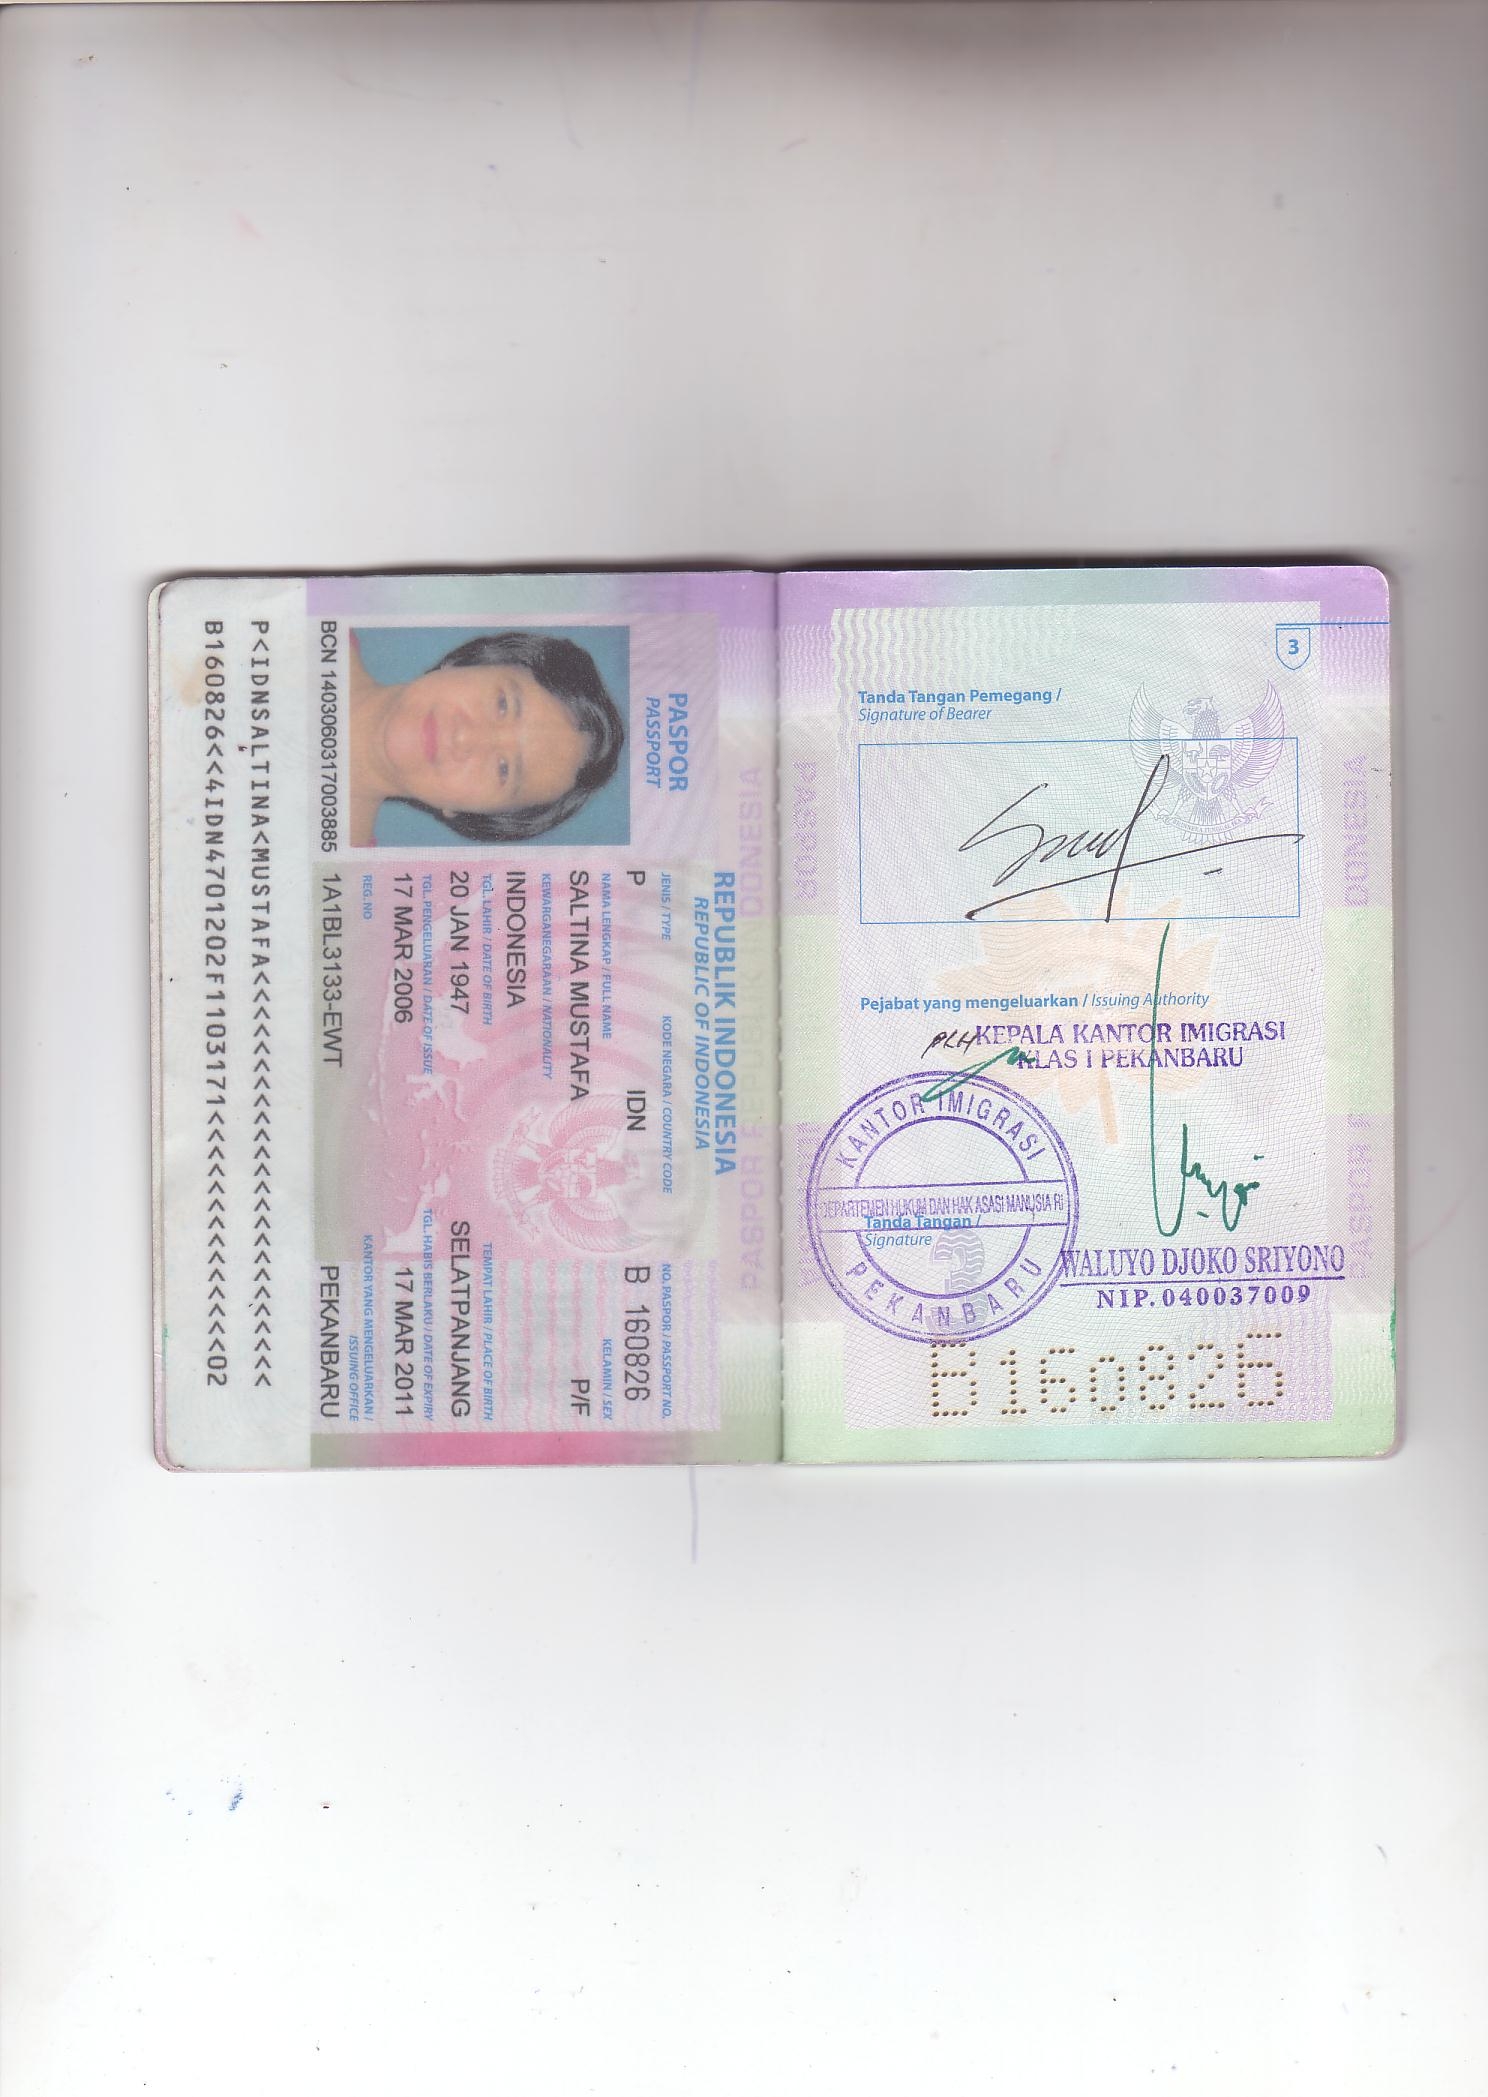 Passport Halaman 2 dan 3  Travel Information Manual